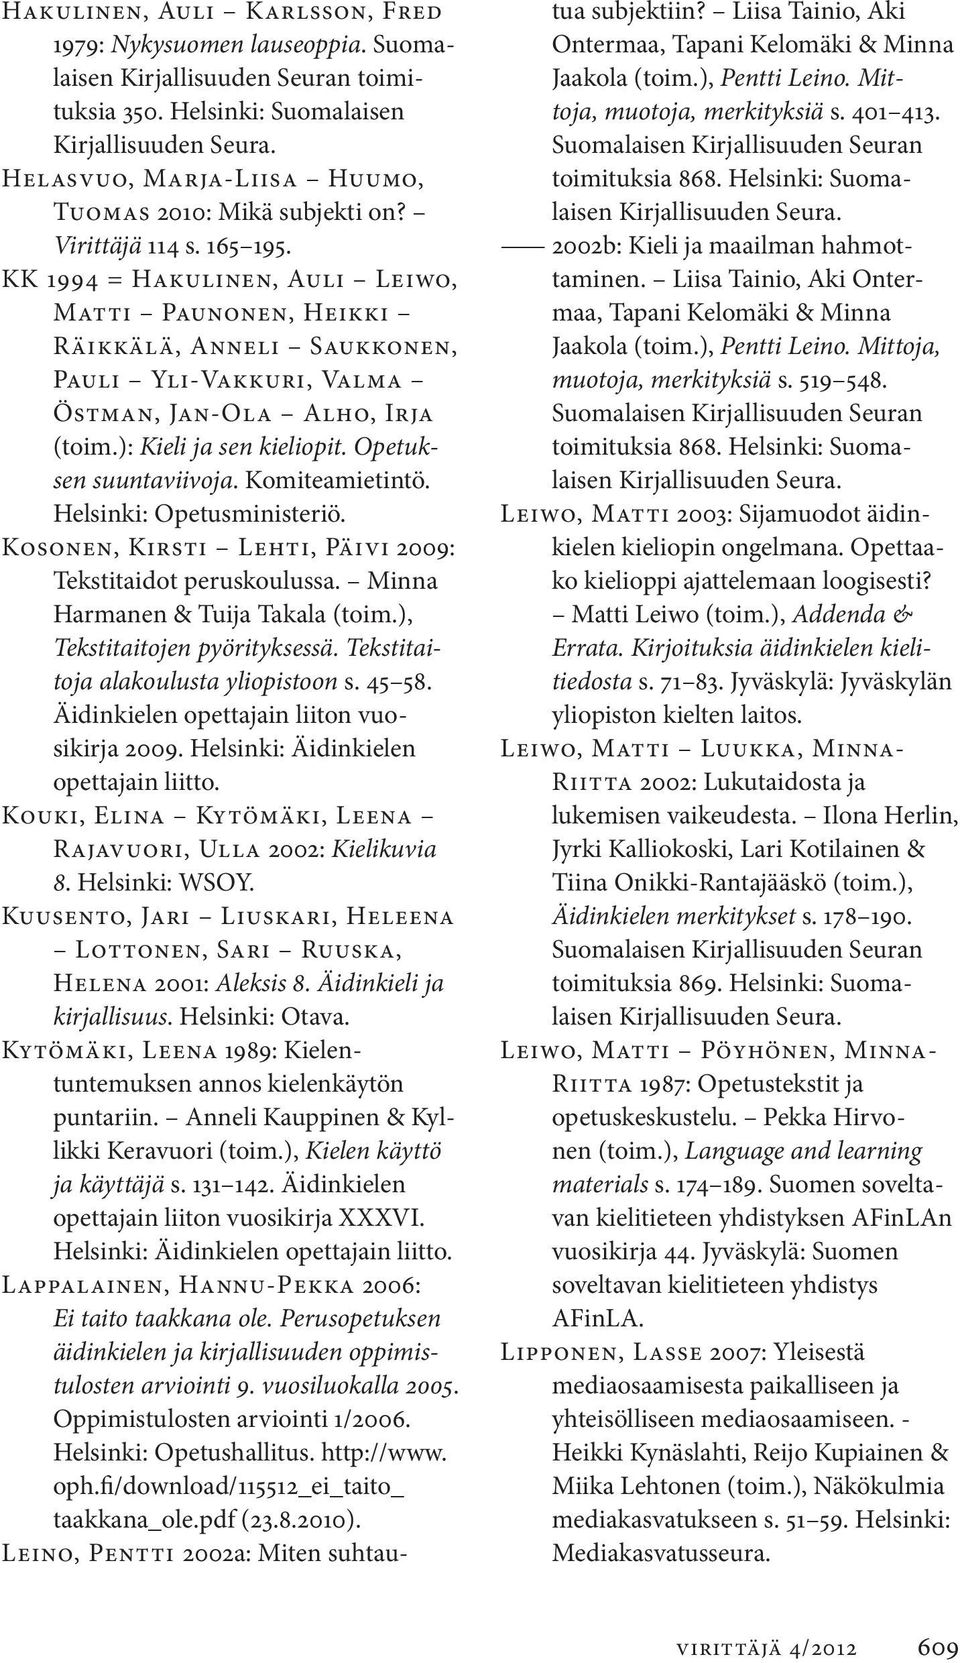 KK 1994 = Hakulinen, Auli Leiwo, Matti Paunonen, Heikki Räikkälä, Anneli Saukkonen, Pauli Yli-Vakkuri, Valma Östman, Jan-Ola Alho, Irja (toim.): Kieli ja sen kieliopit. Opetuksen suuntaviivoja.